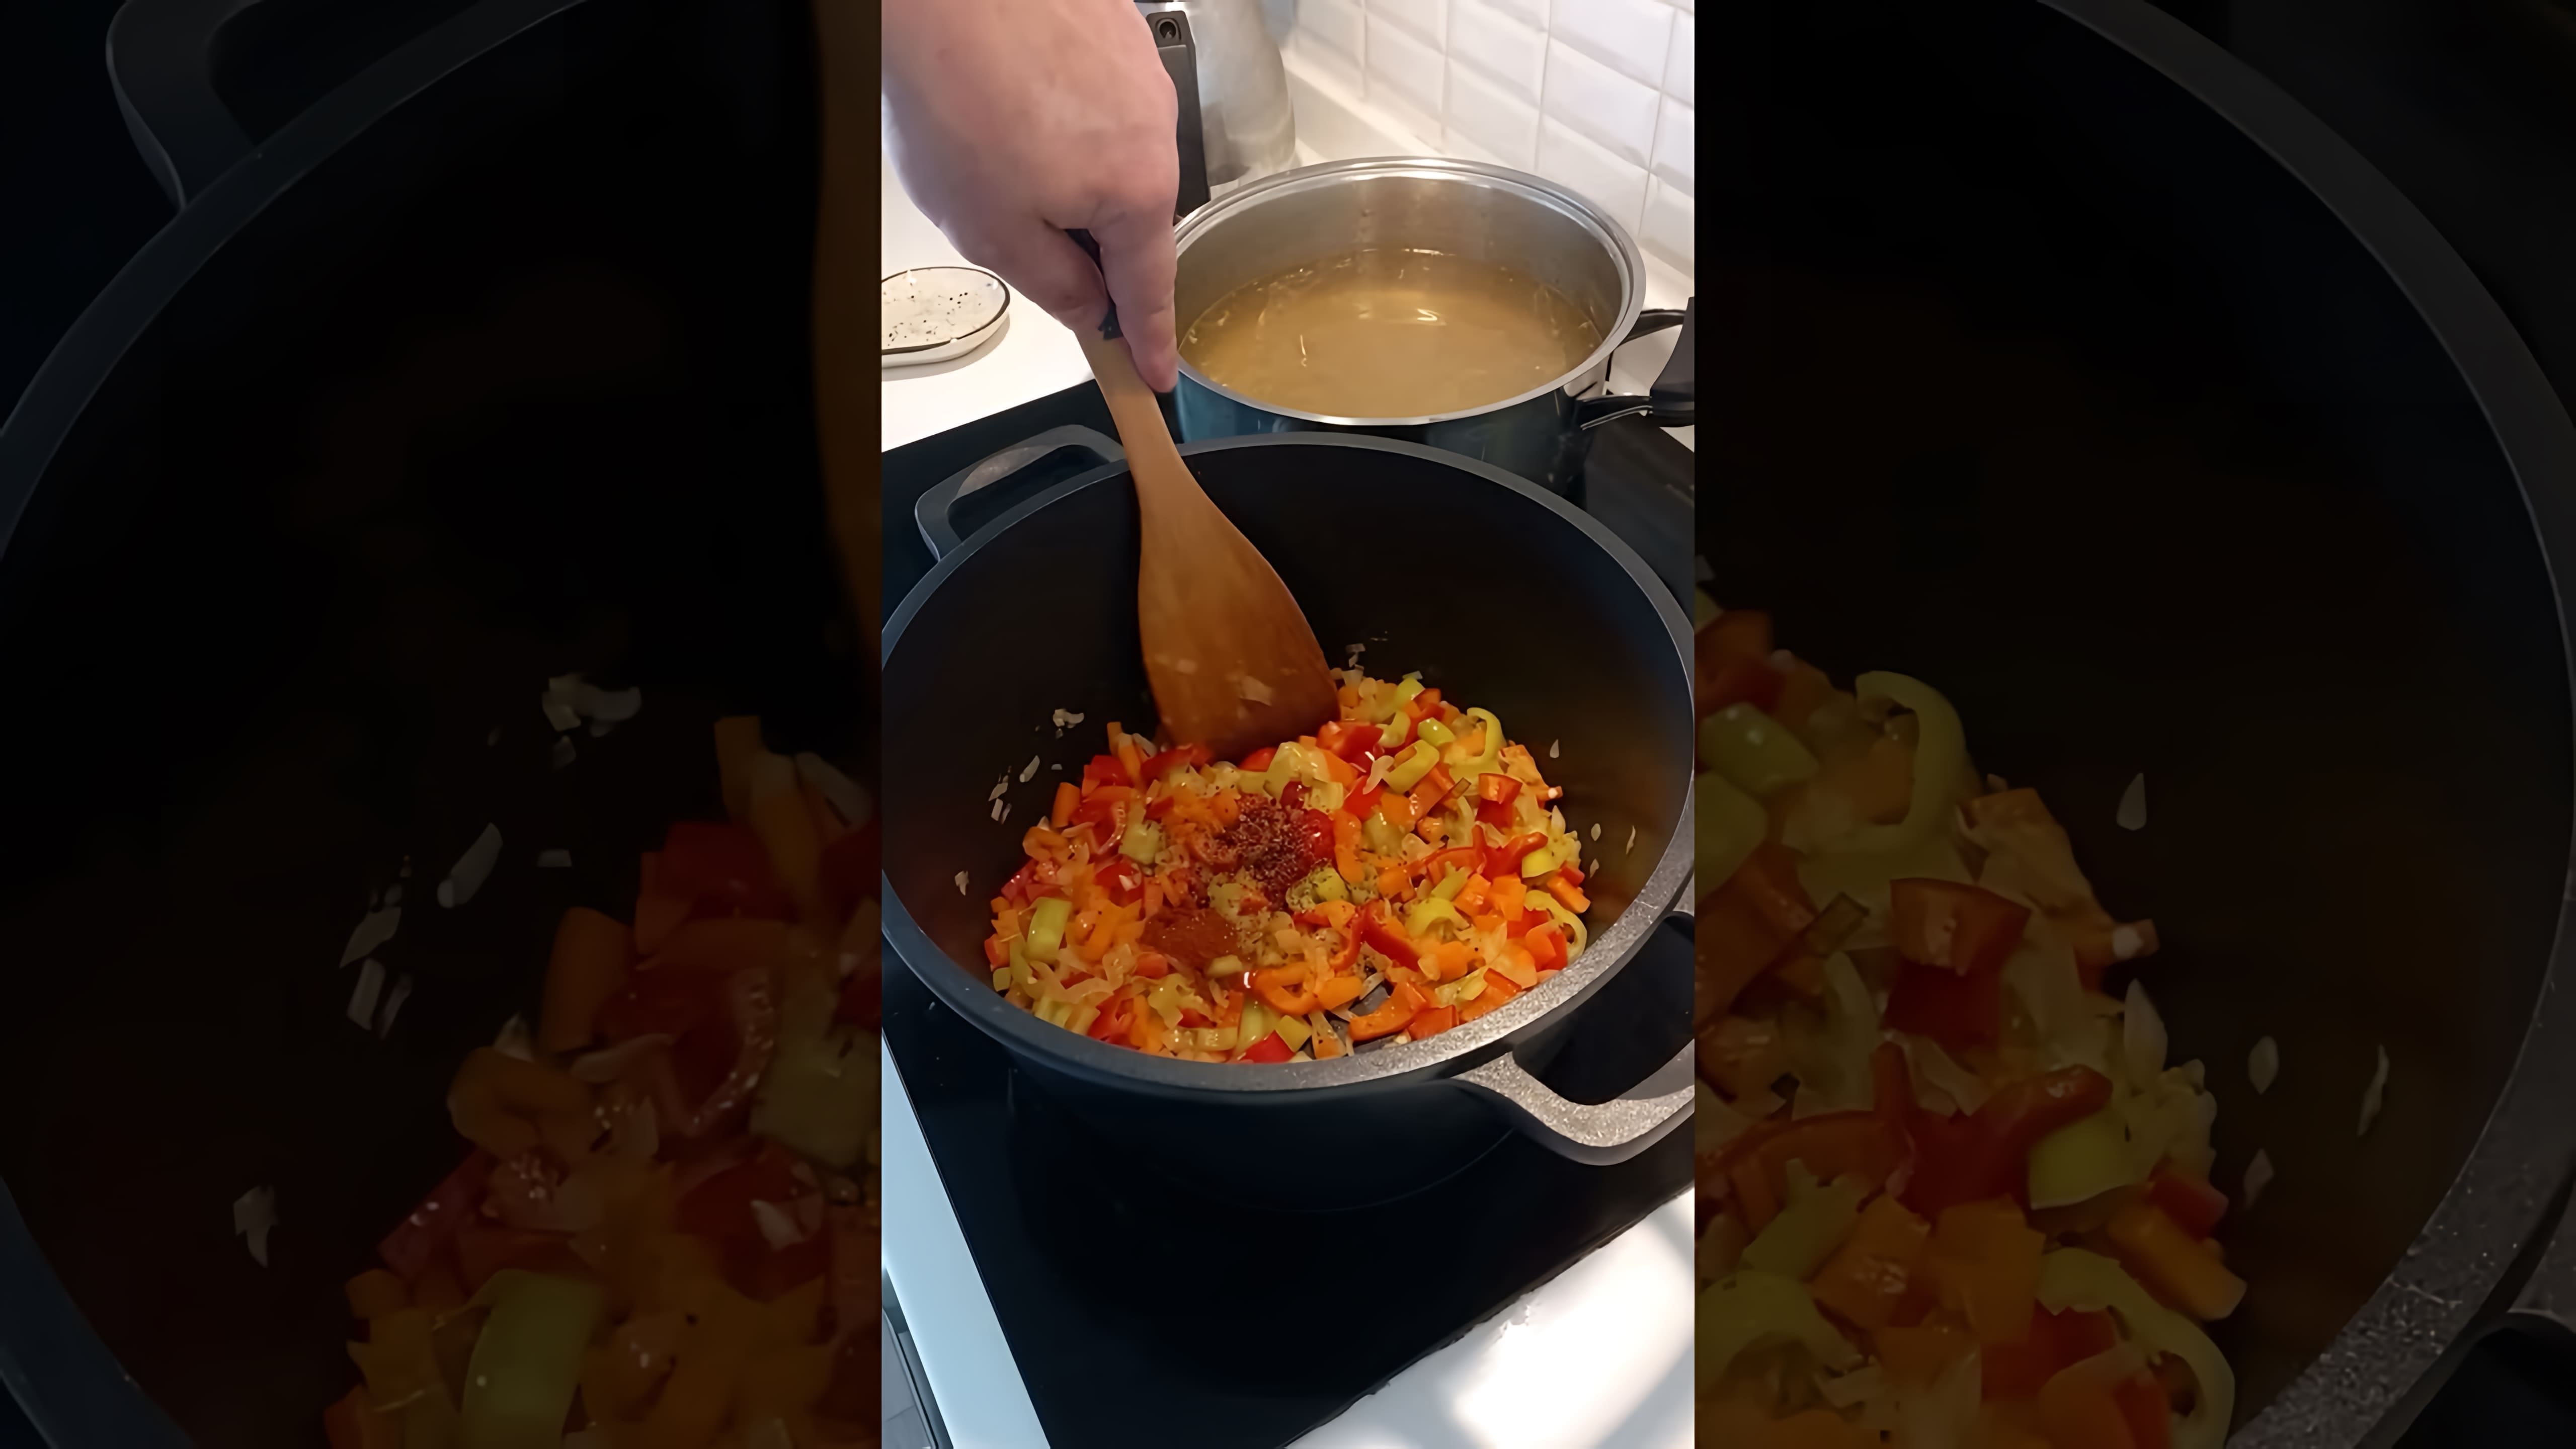 В этом видео демонстрируется процесс приготовления болгарского куриного супа, который называется "пилешка супа"